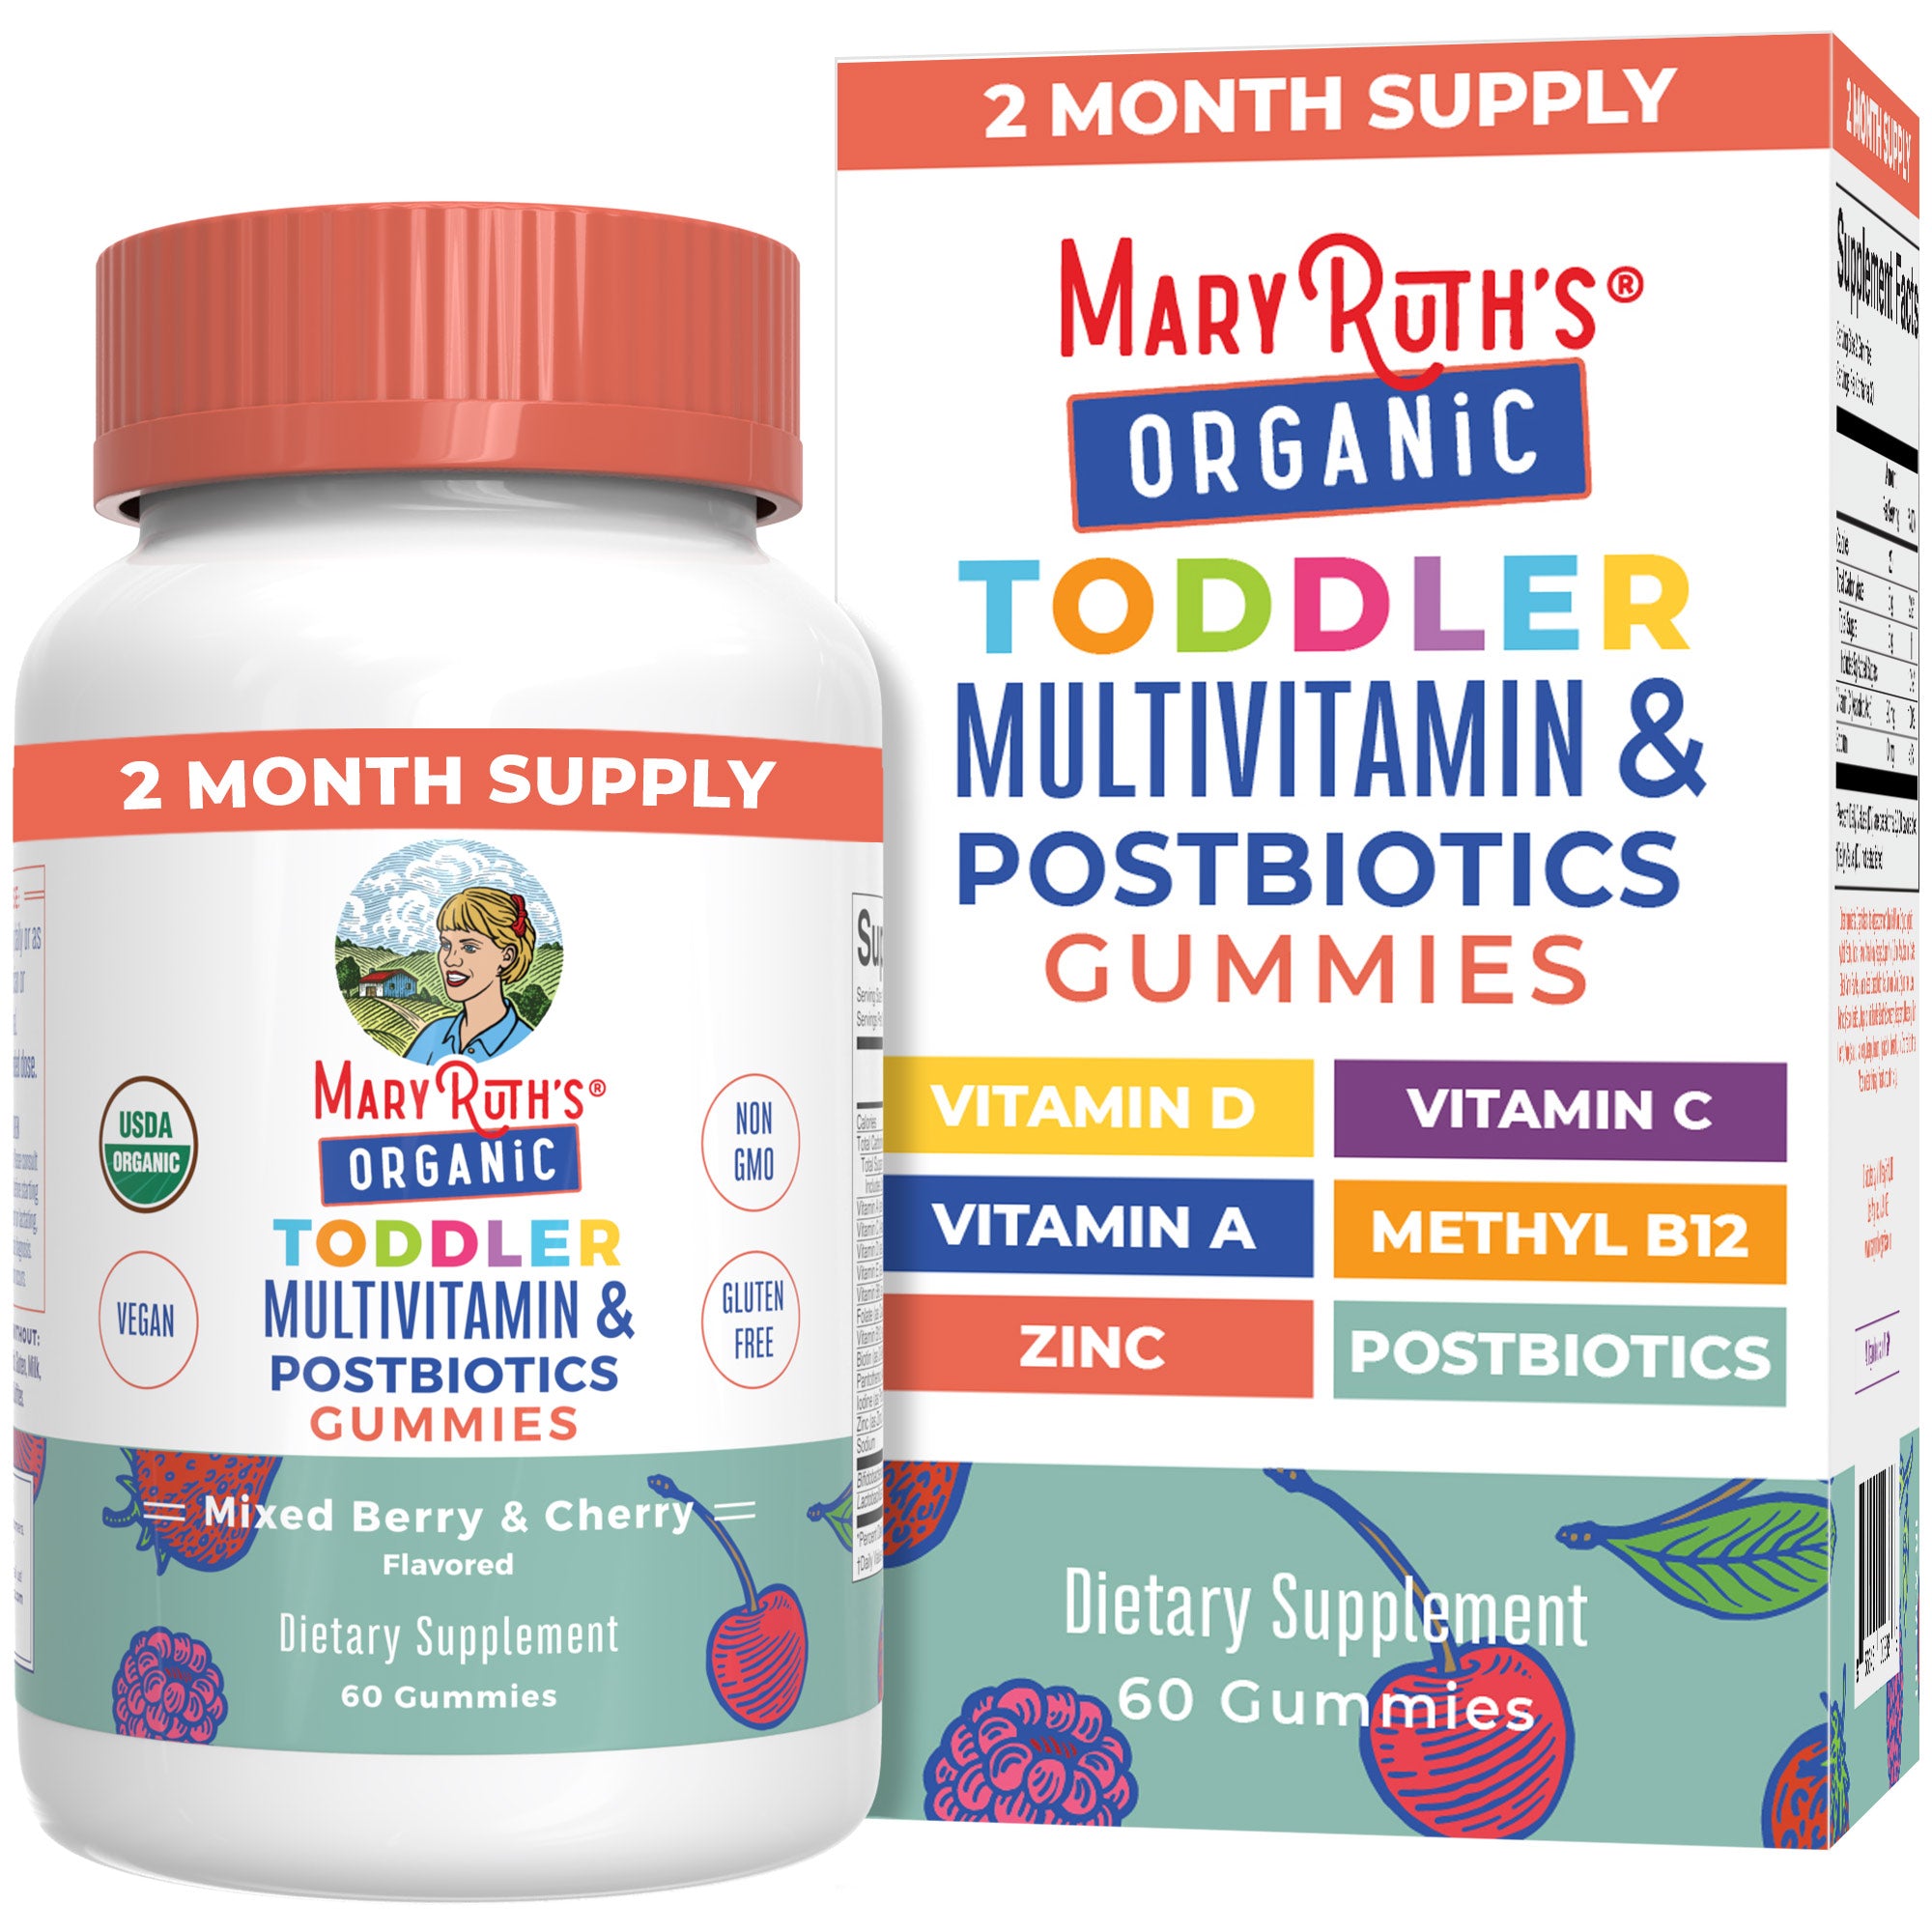 Organic Toddler Multivitamin + Postbiotics Gummies